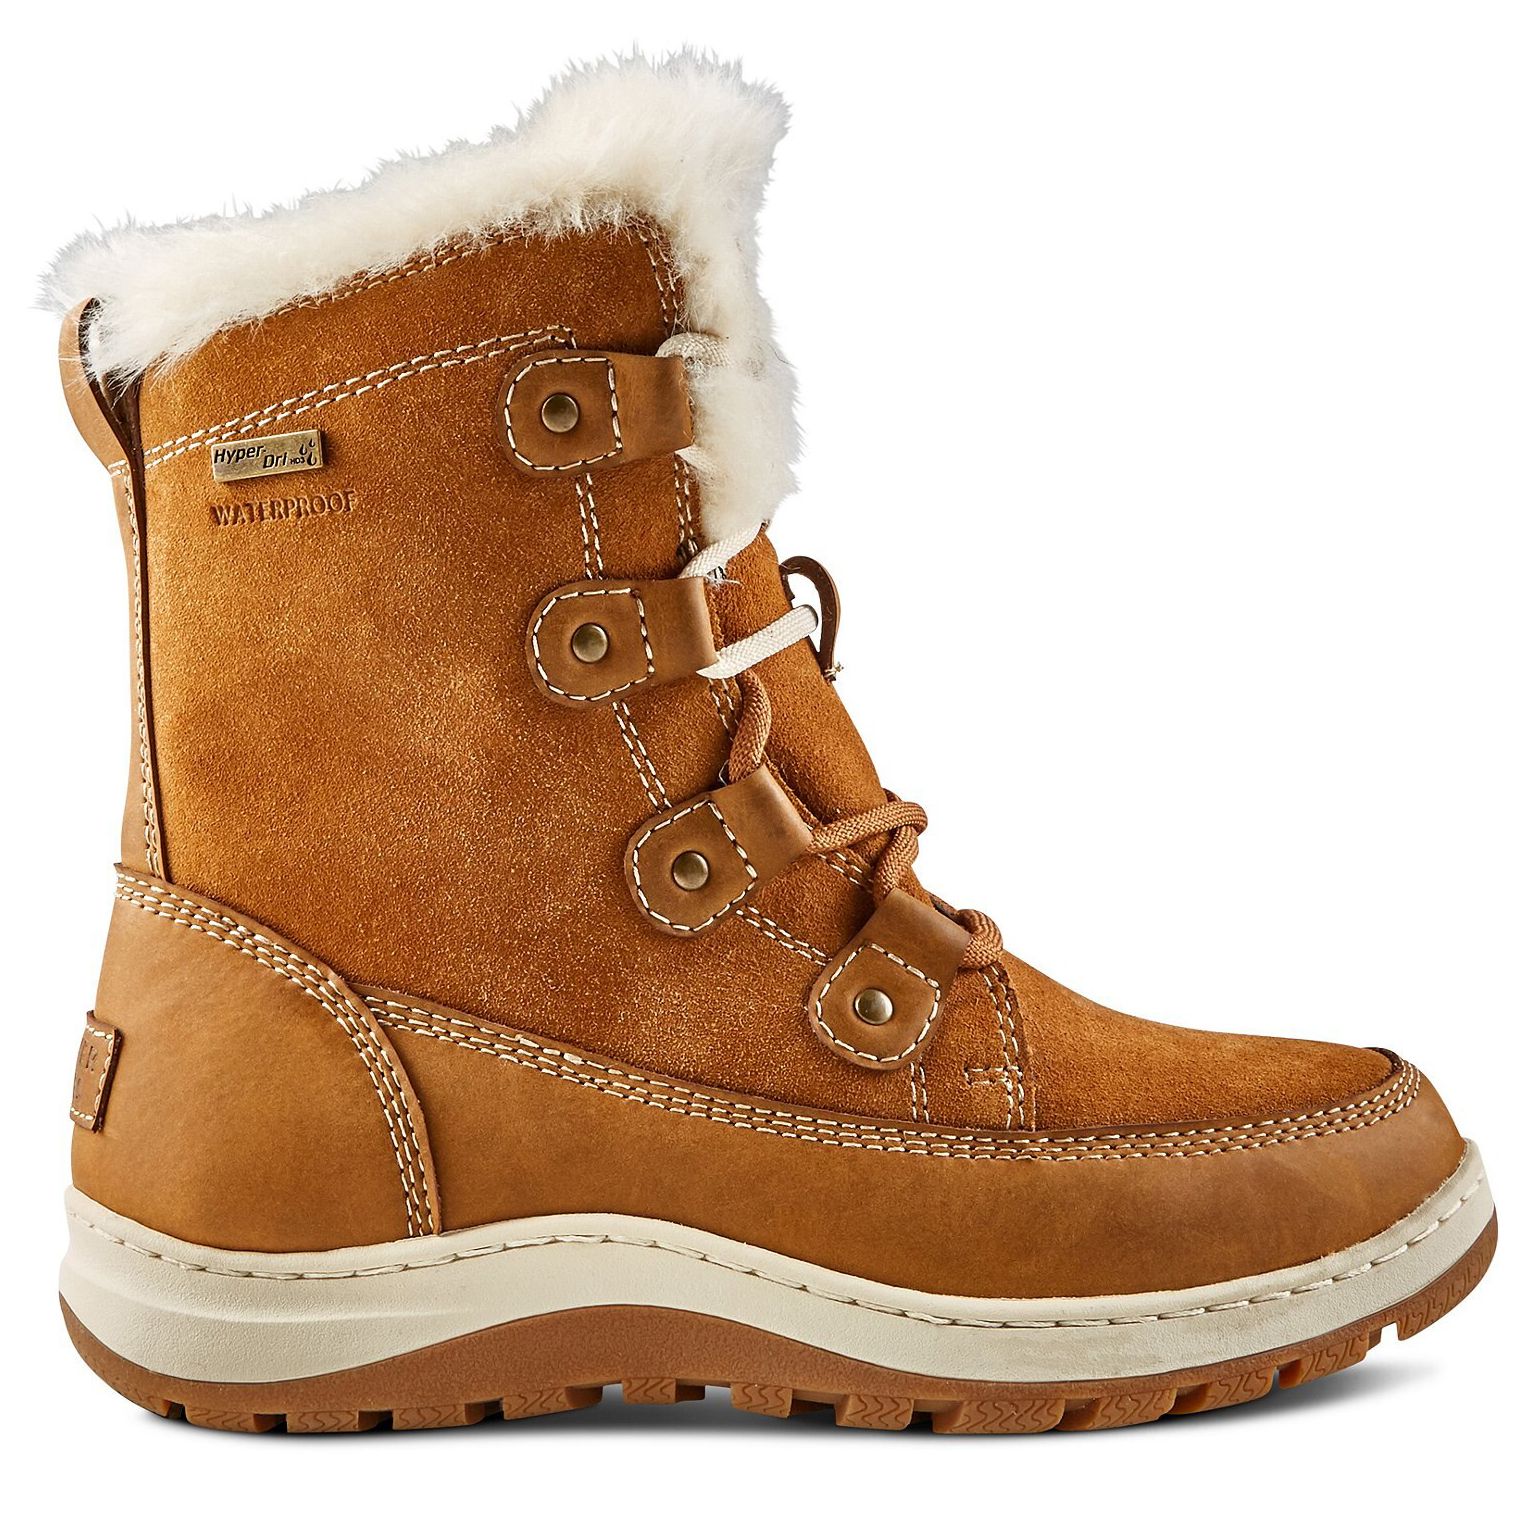 Las mejores botas de nieve y hielo para mujer: botas de invierno impermeables ICEFX HD3 de Denver Hayes para mujer